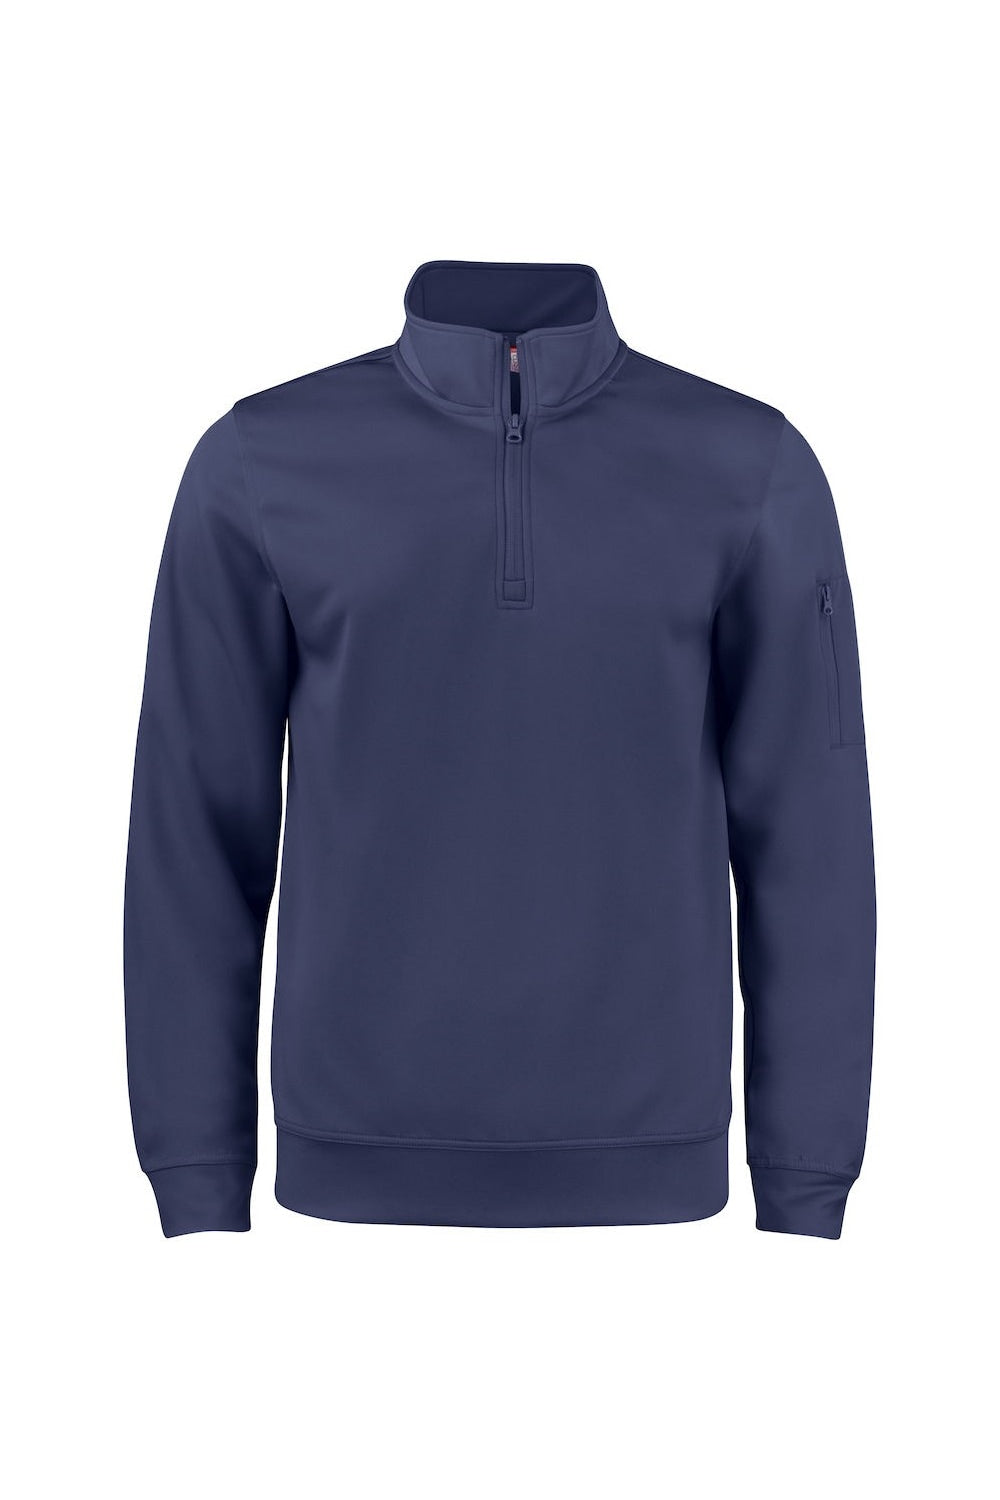 Unisex Adult Basic Active Quarter Zip Sweatshirt - Dark Navy